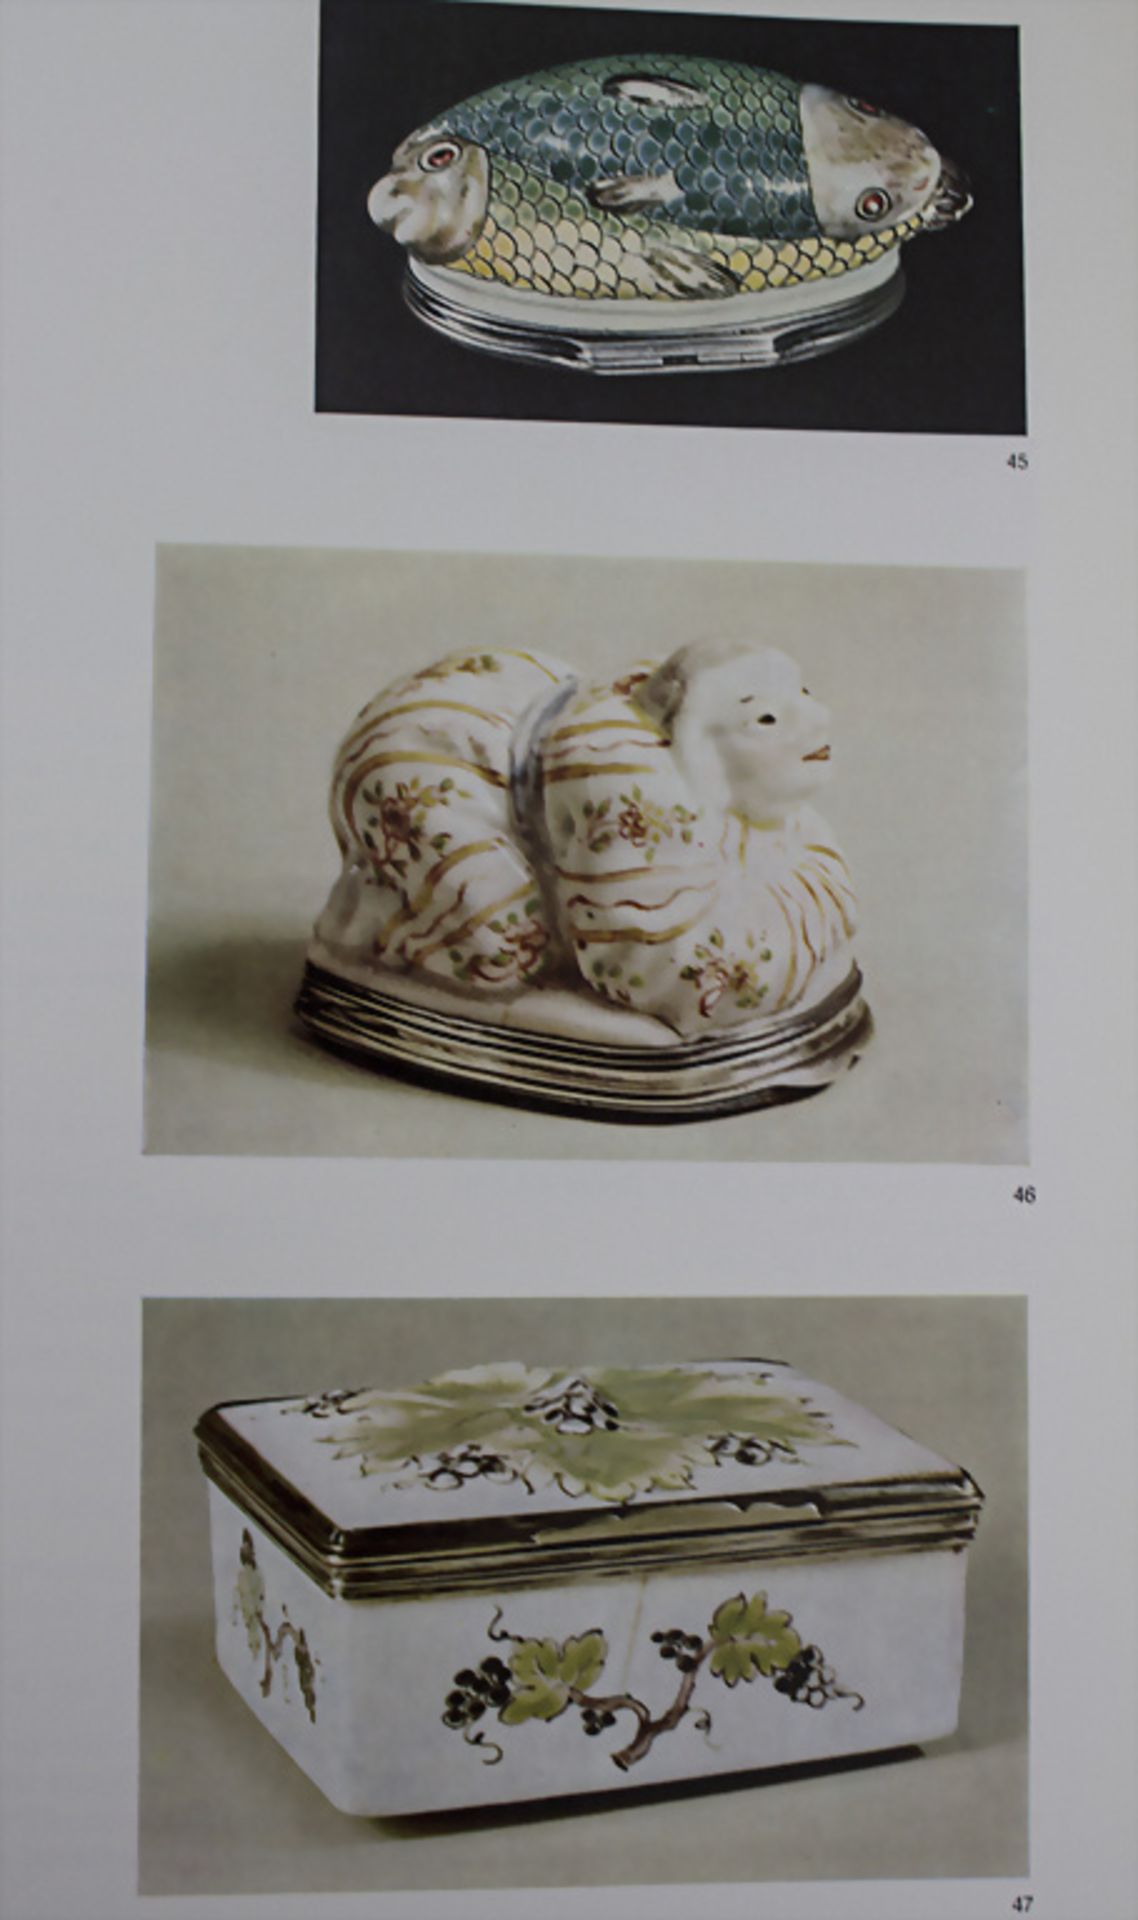 Konvolut aus 9 Fachbüchern zu Porzellan, Gläsern und Keramik - Image 4 of 47